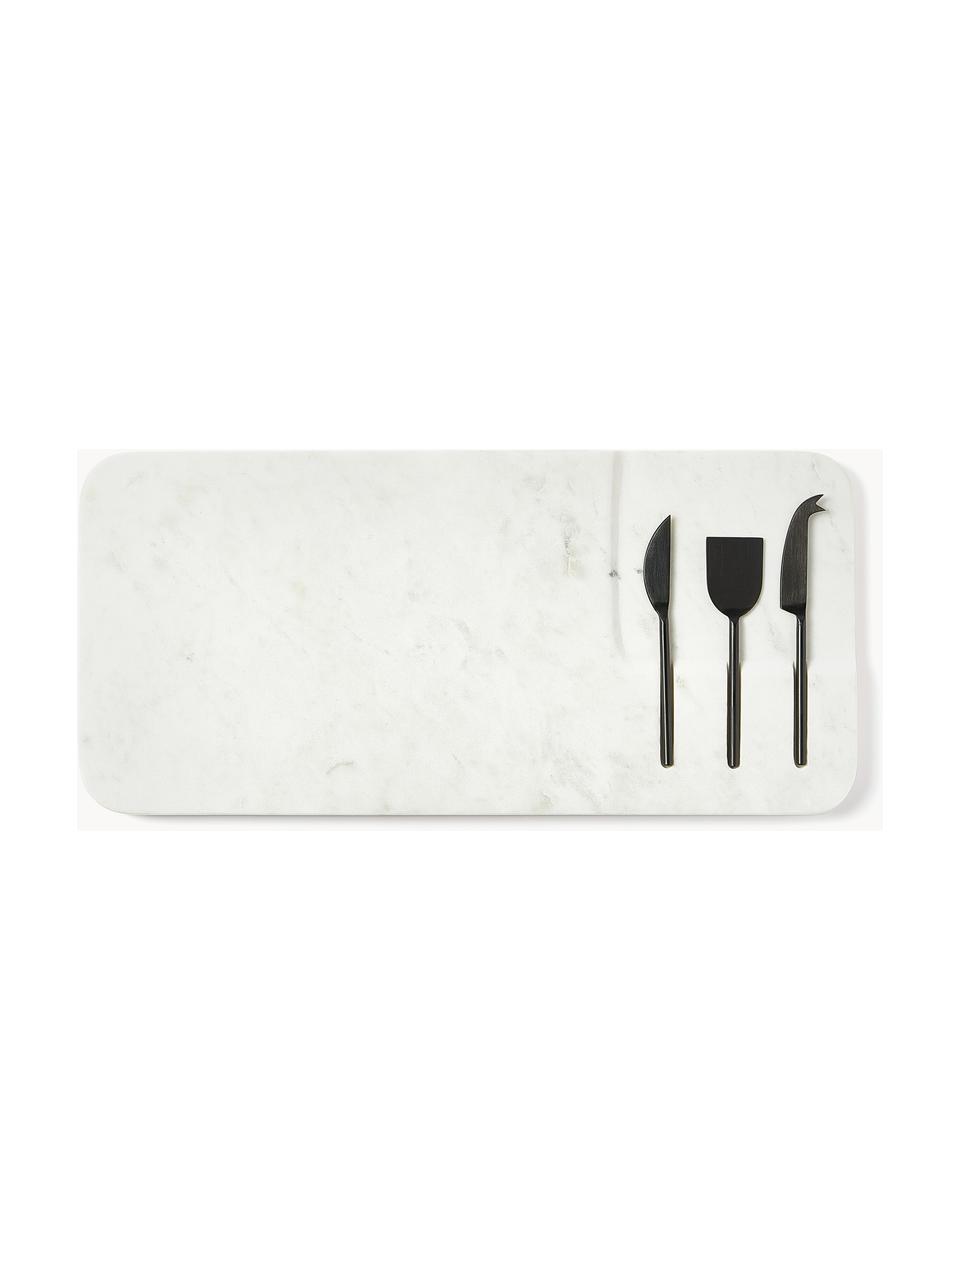 Servierplatte Jaya mit Käsemessern, 4er-Set, Messer: Metall, Weiß marmoriert, Schwarz, B 48 x T 22 cm